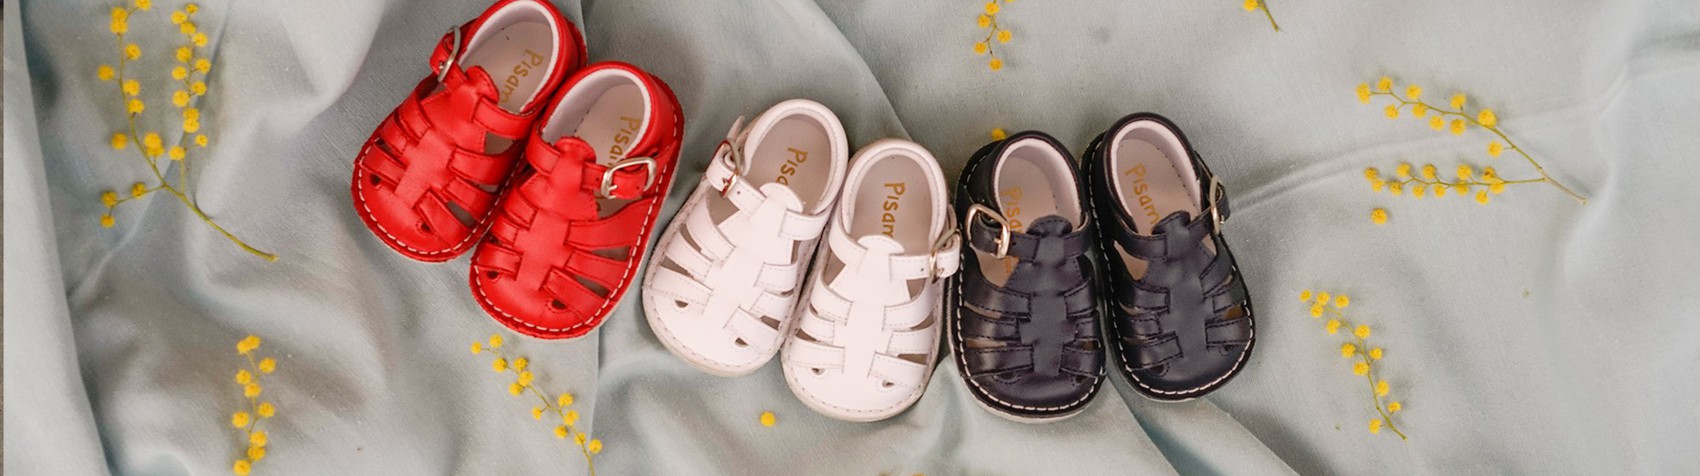 Sandales cuir bébé fille premiers pas - blanc, Chaussures